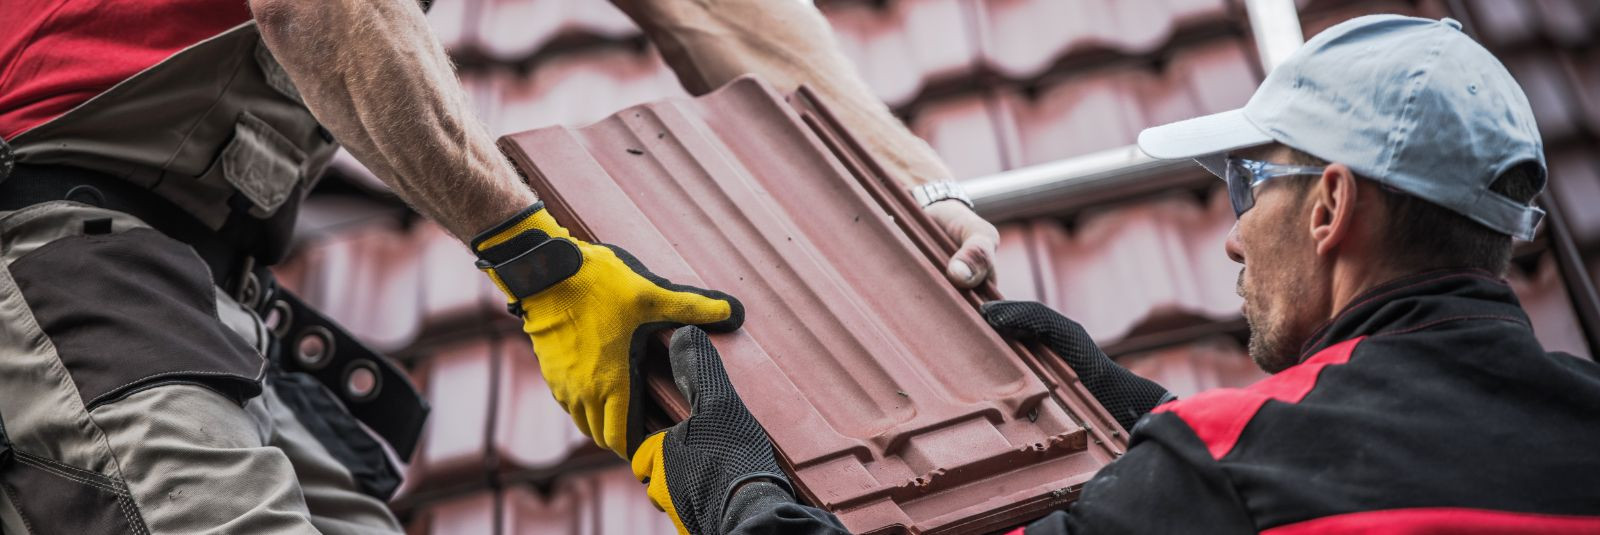 Teie kodu katuse seisund mängib olulist rolli selle ilme, ohutuse ja funktsionaalsuse määramisel. Aja jooksul võib katuse vananemine ja kahjustused nõuda renove